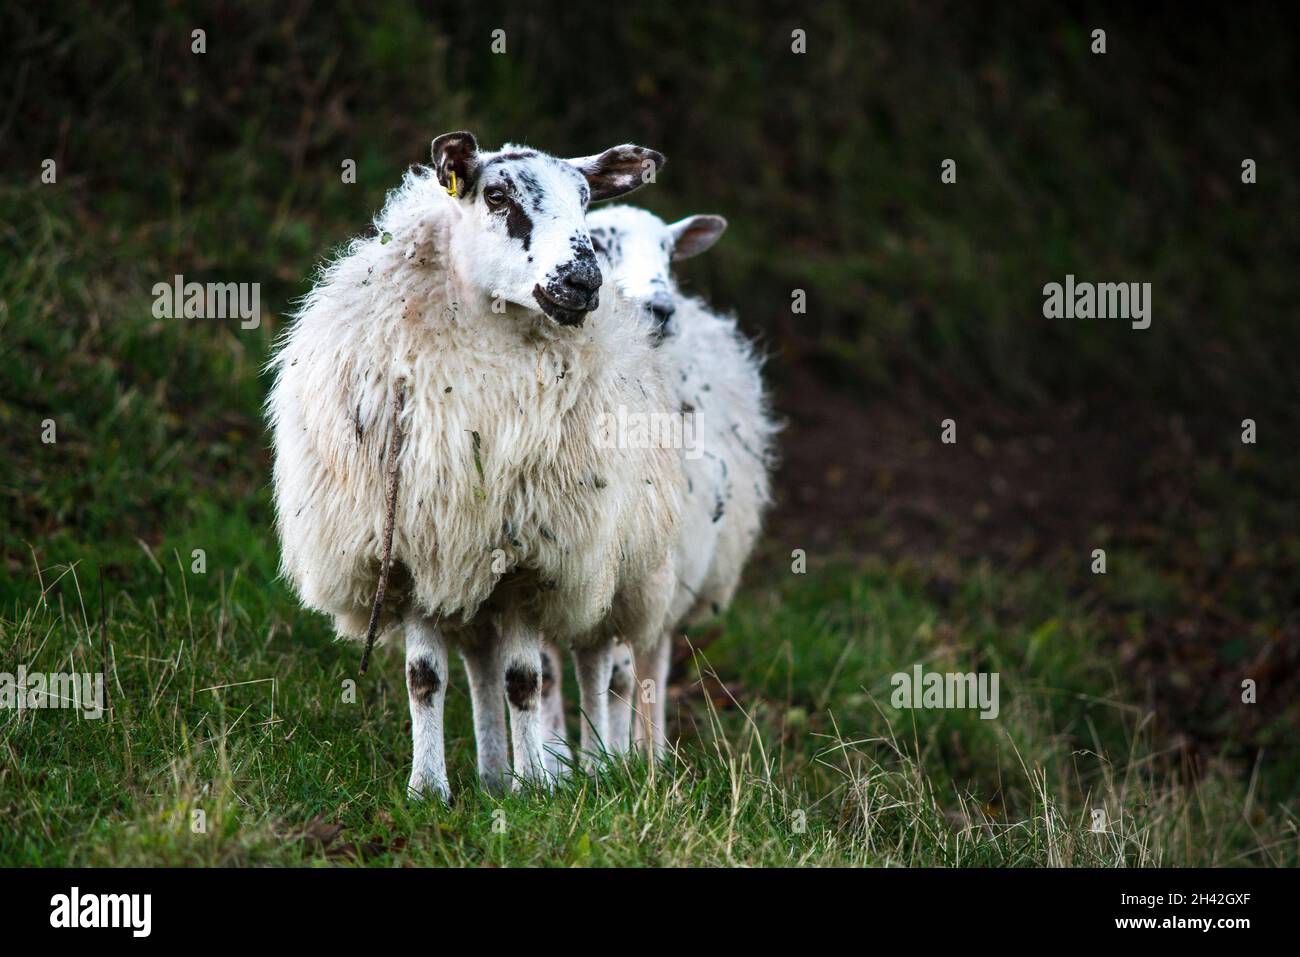 Hereshire sheep Ovis aries Stock Photo